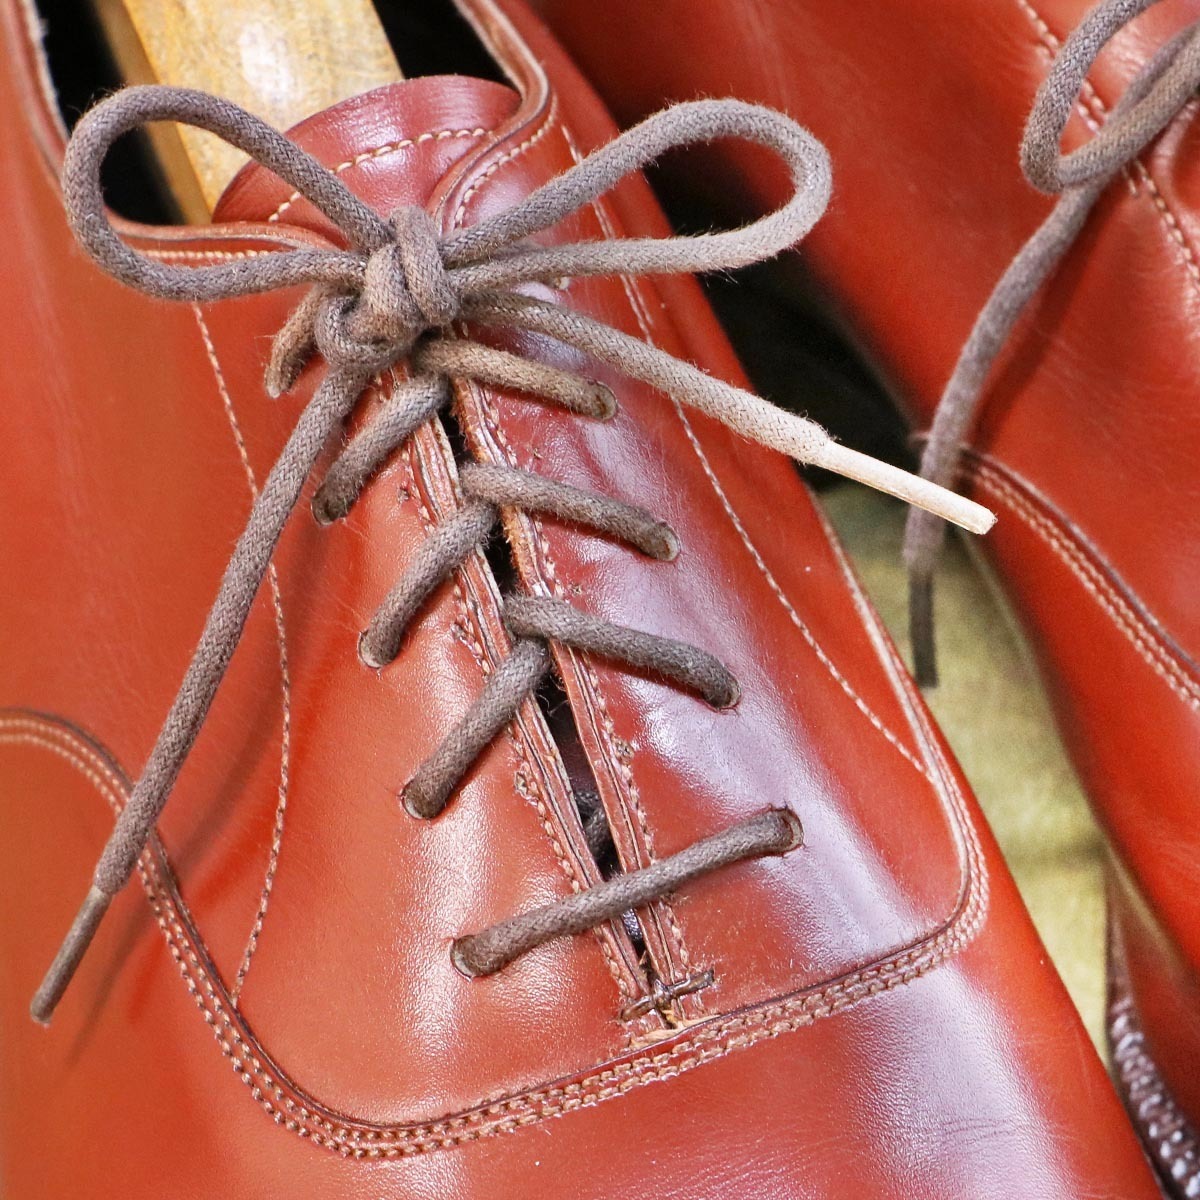 本物 極上品 ポールセンスコーン 特注品 パンチドキャップトゥ OXFORD メンズレザーシューズ 紳士靴 ウッドツリー付 POULSEN SKONE_画像4